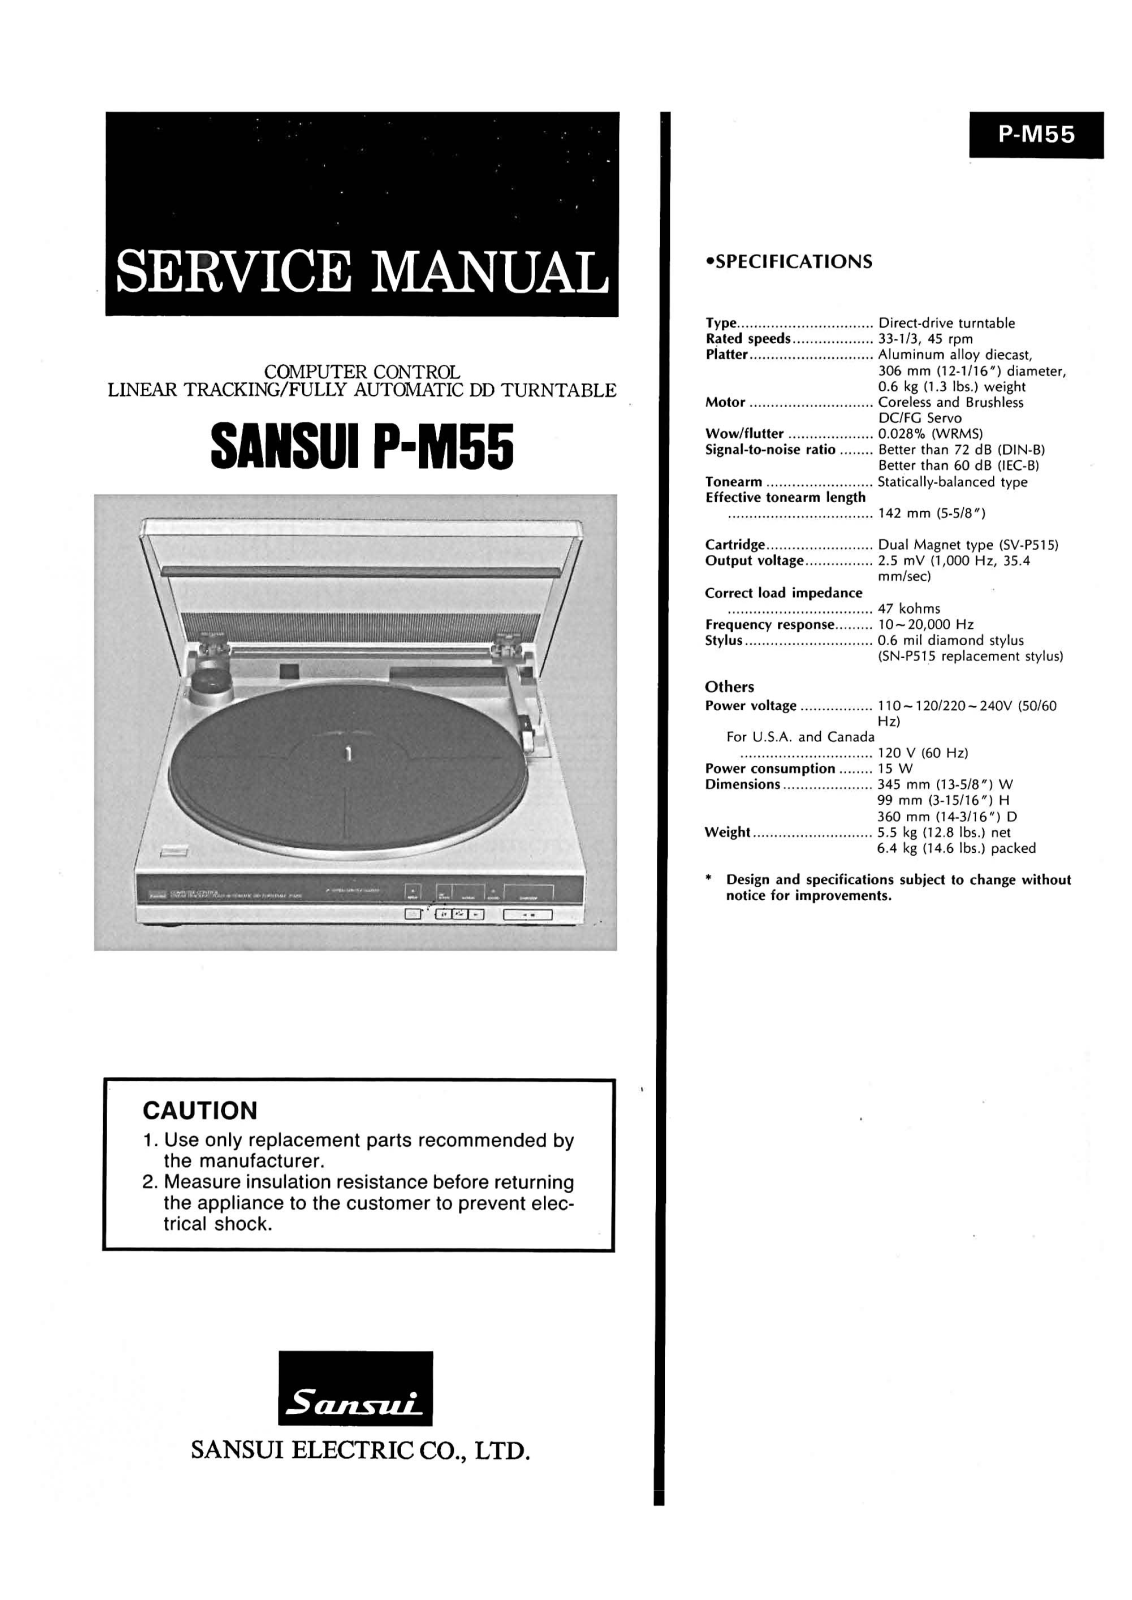 Sansui P-M55 Service Manual